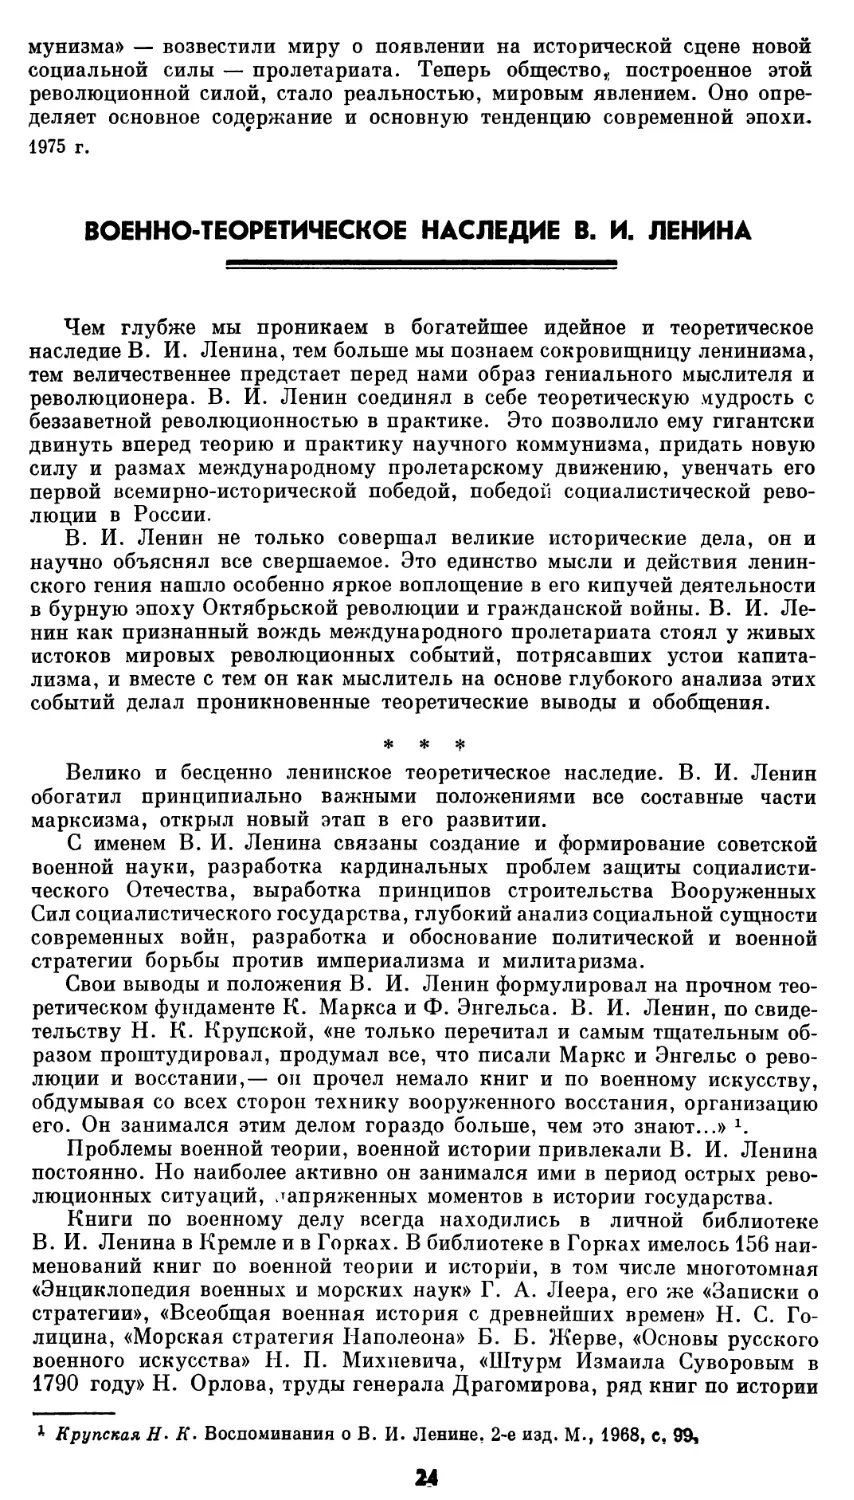 Военно-теоретическое наследие В. И. Ленина